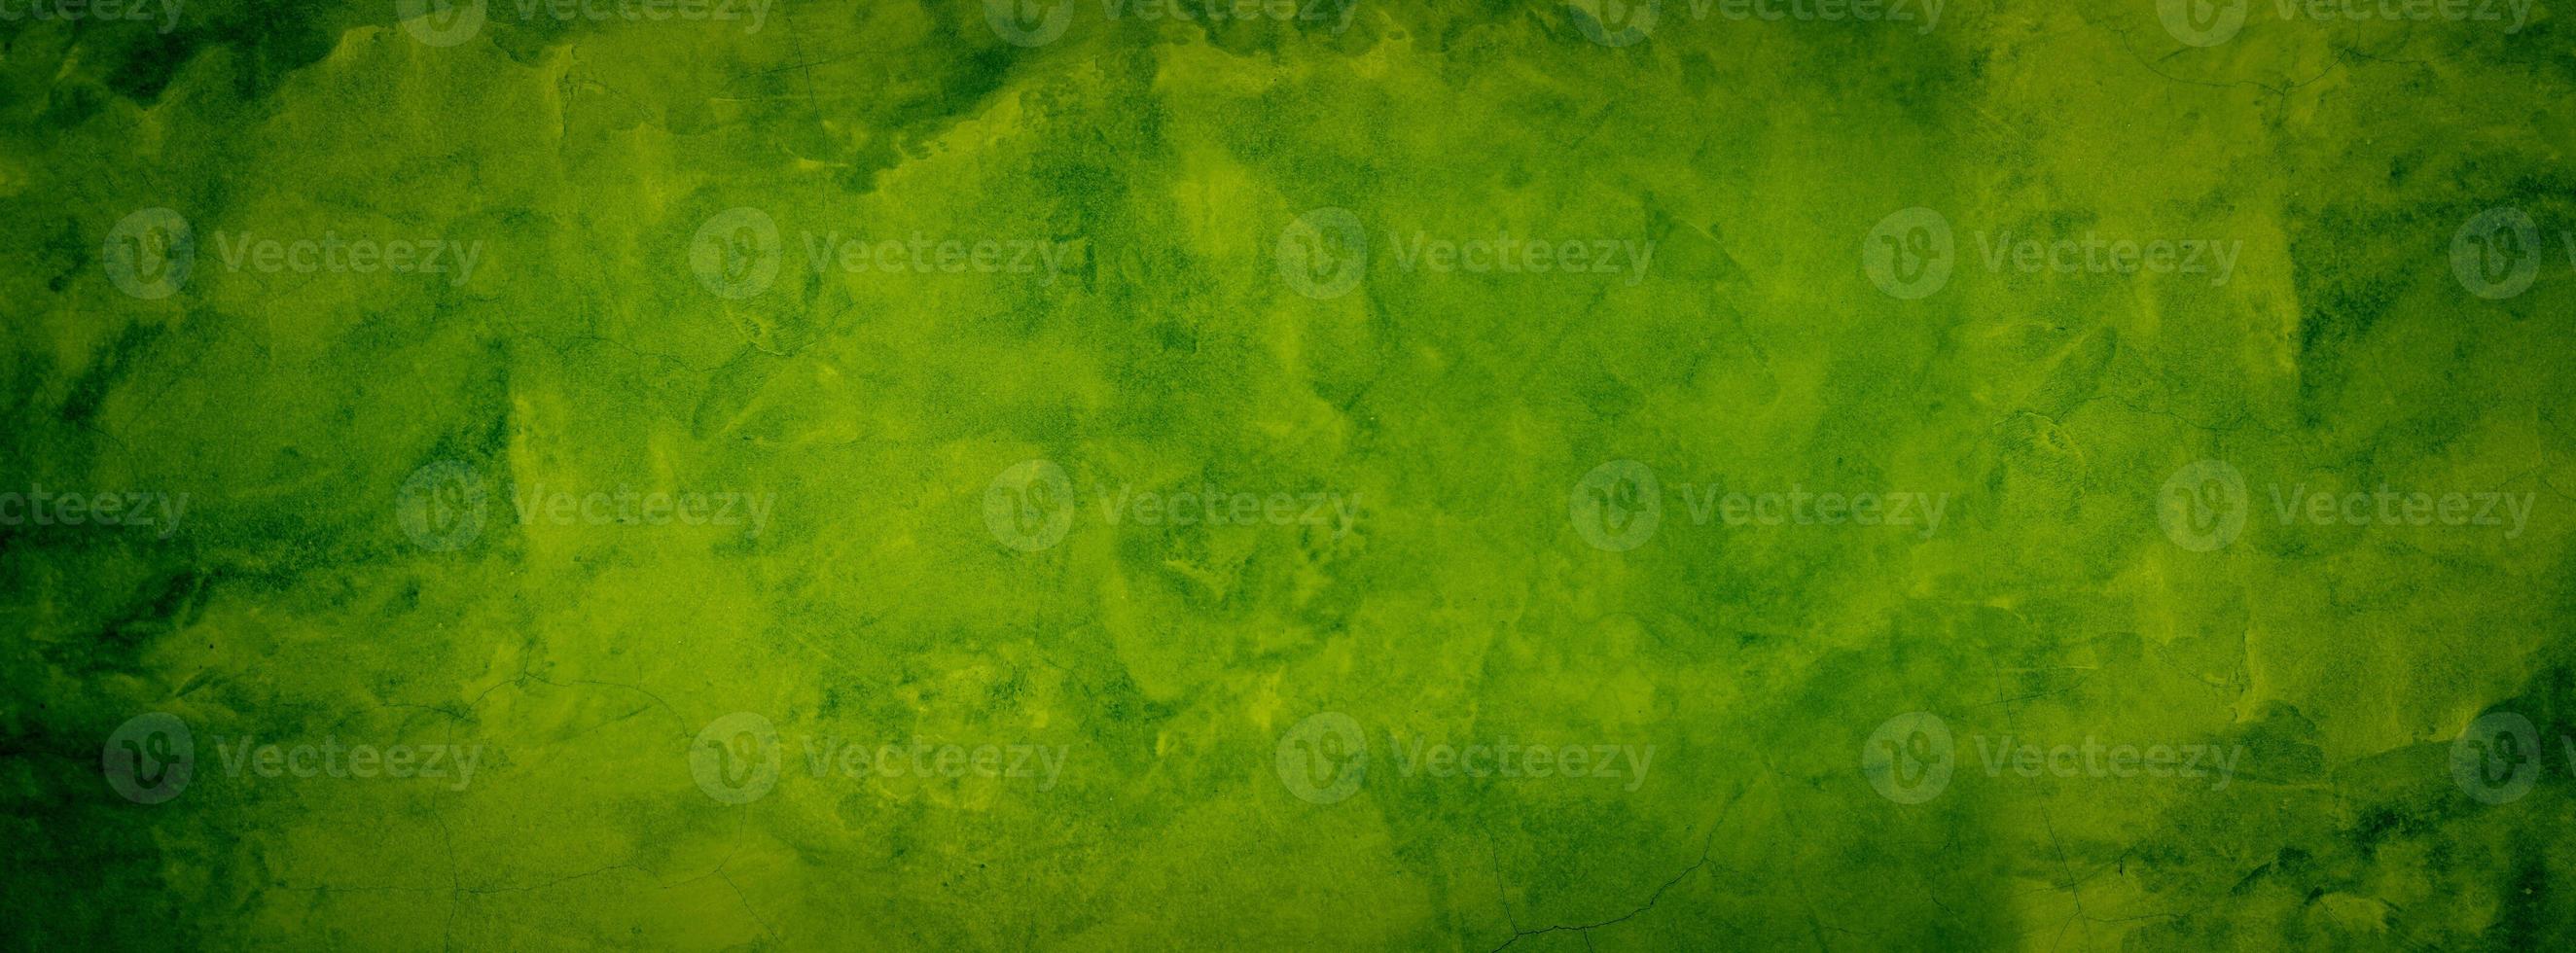 bannière de texture verte photo